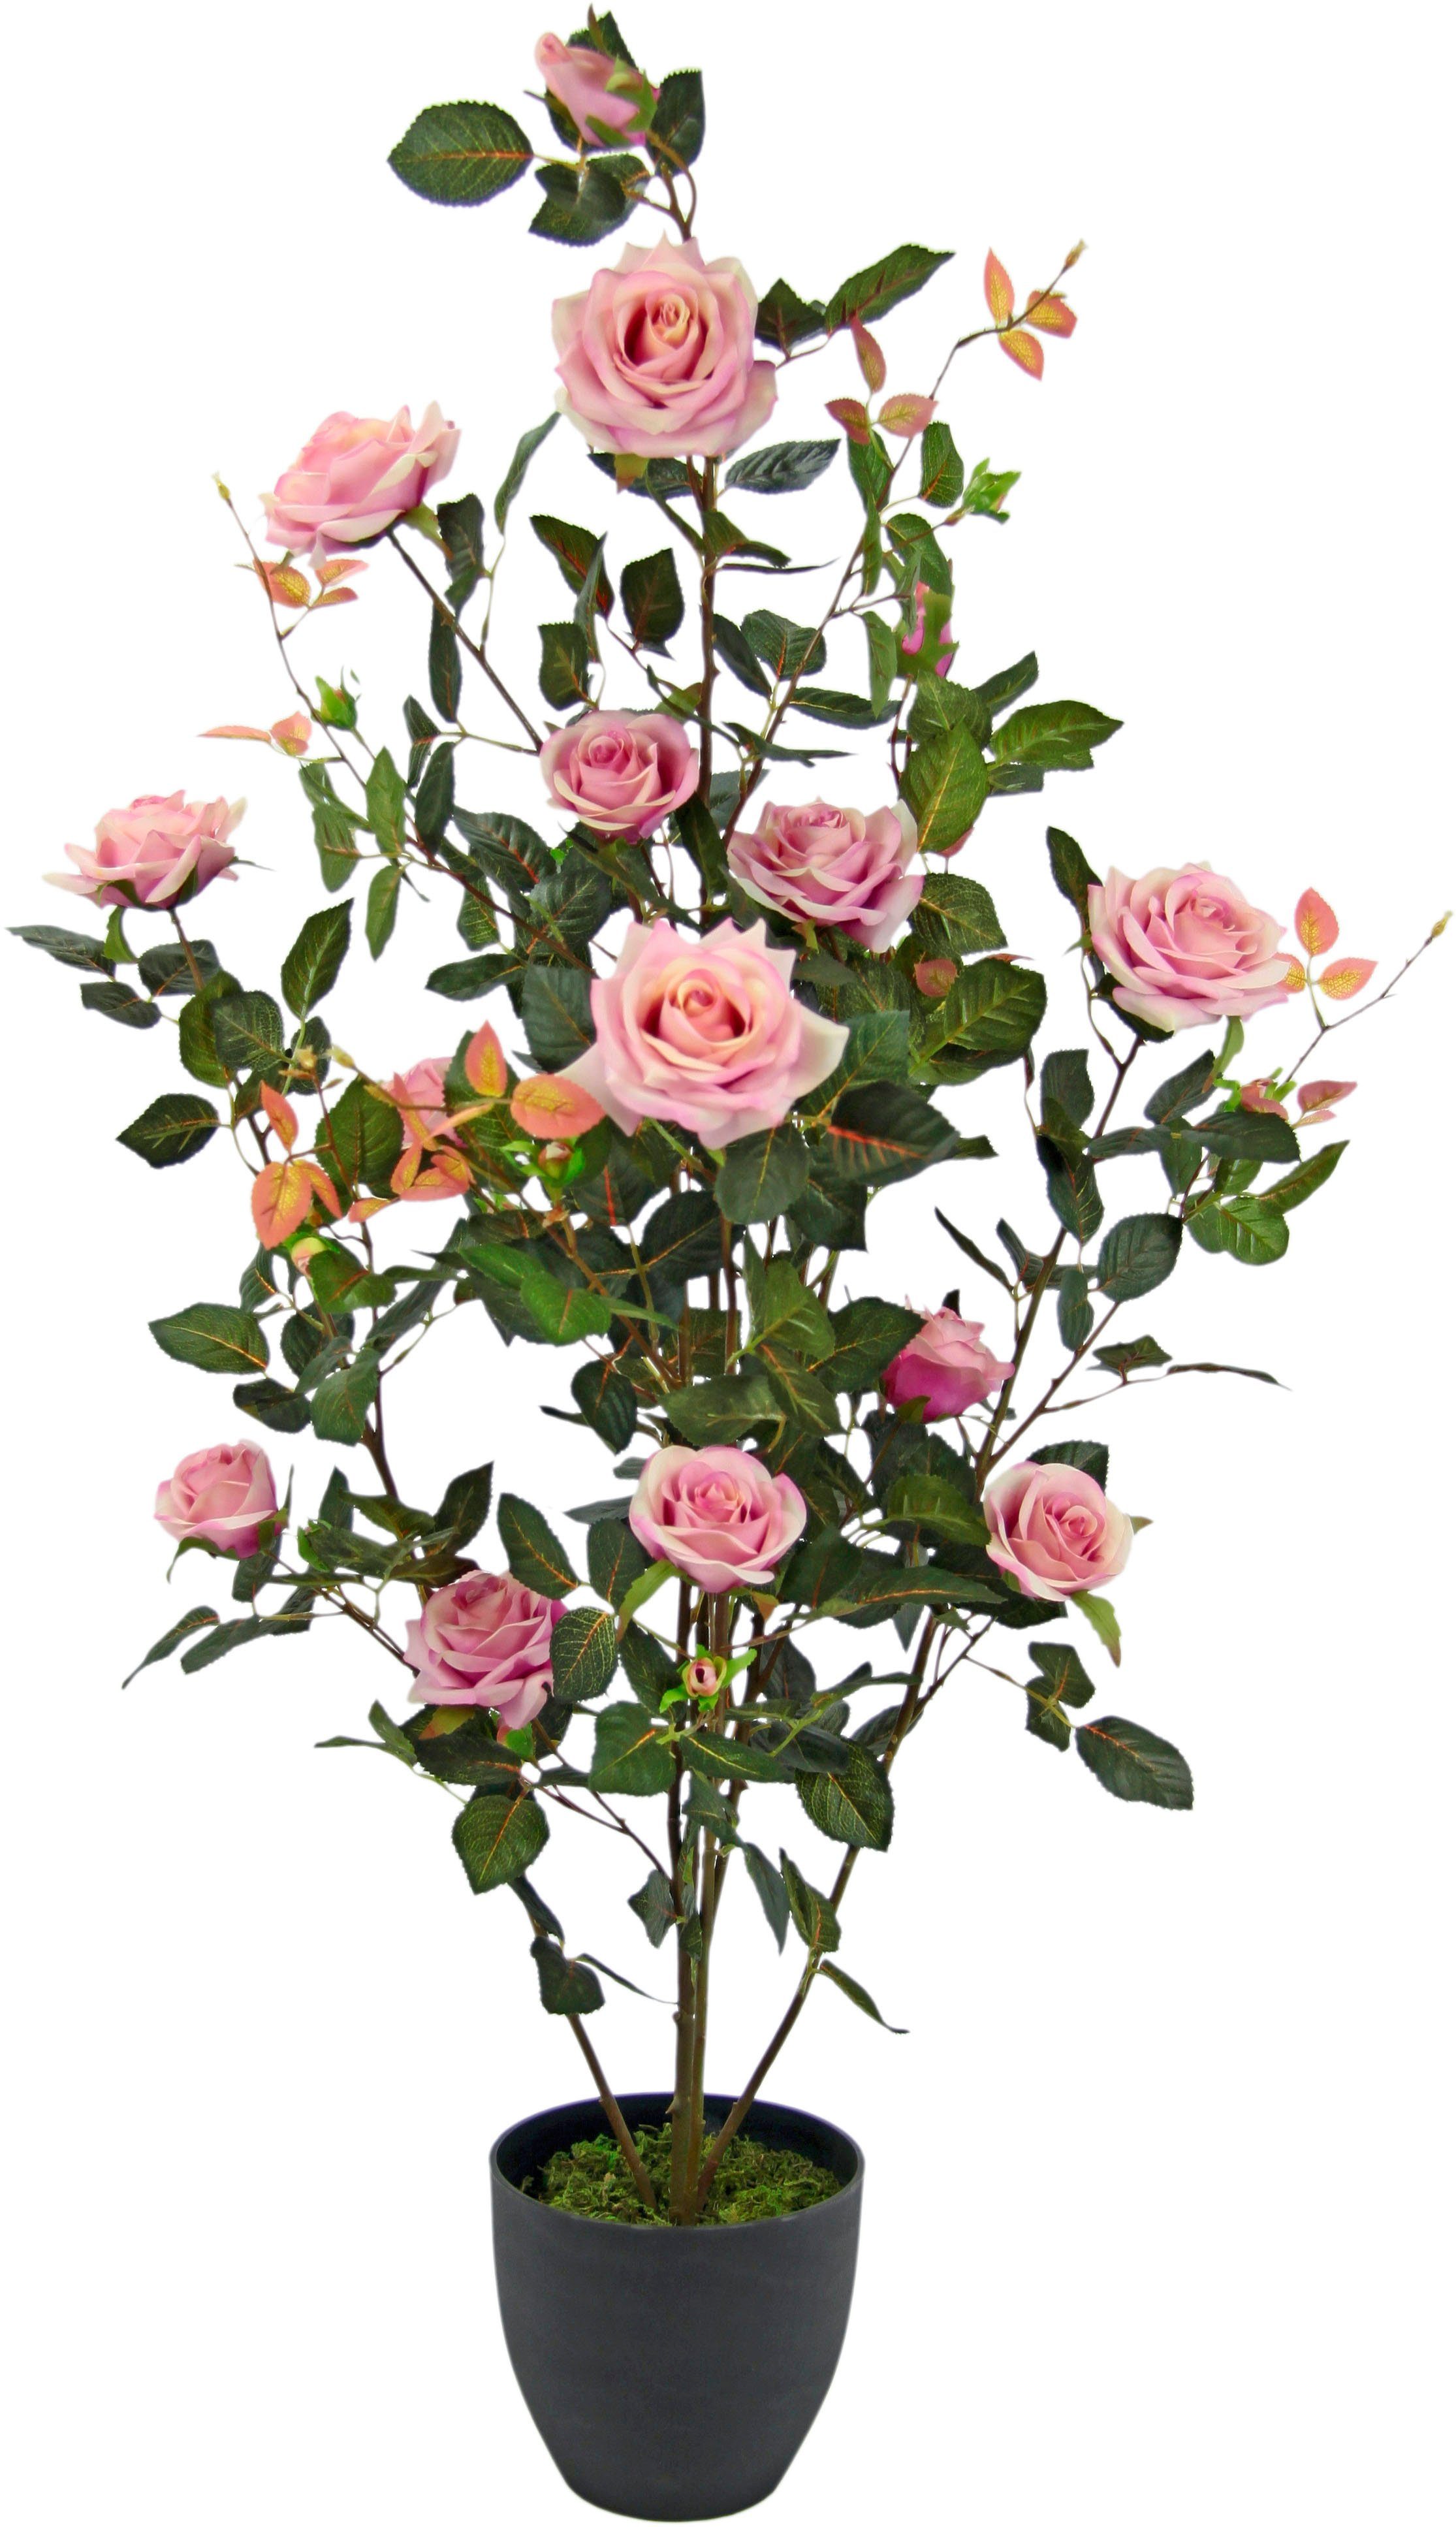 I.GE.A. Kunstboom Rozenstruik in pot Kunstrozen kunstplanten rozenstruik decoratie huwelijksfeest (1 stuk)